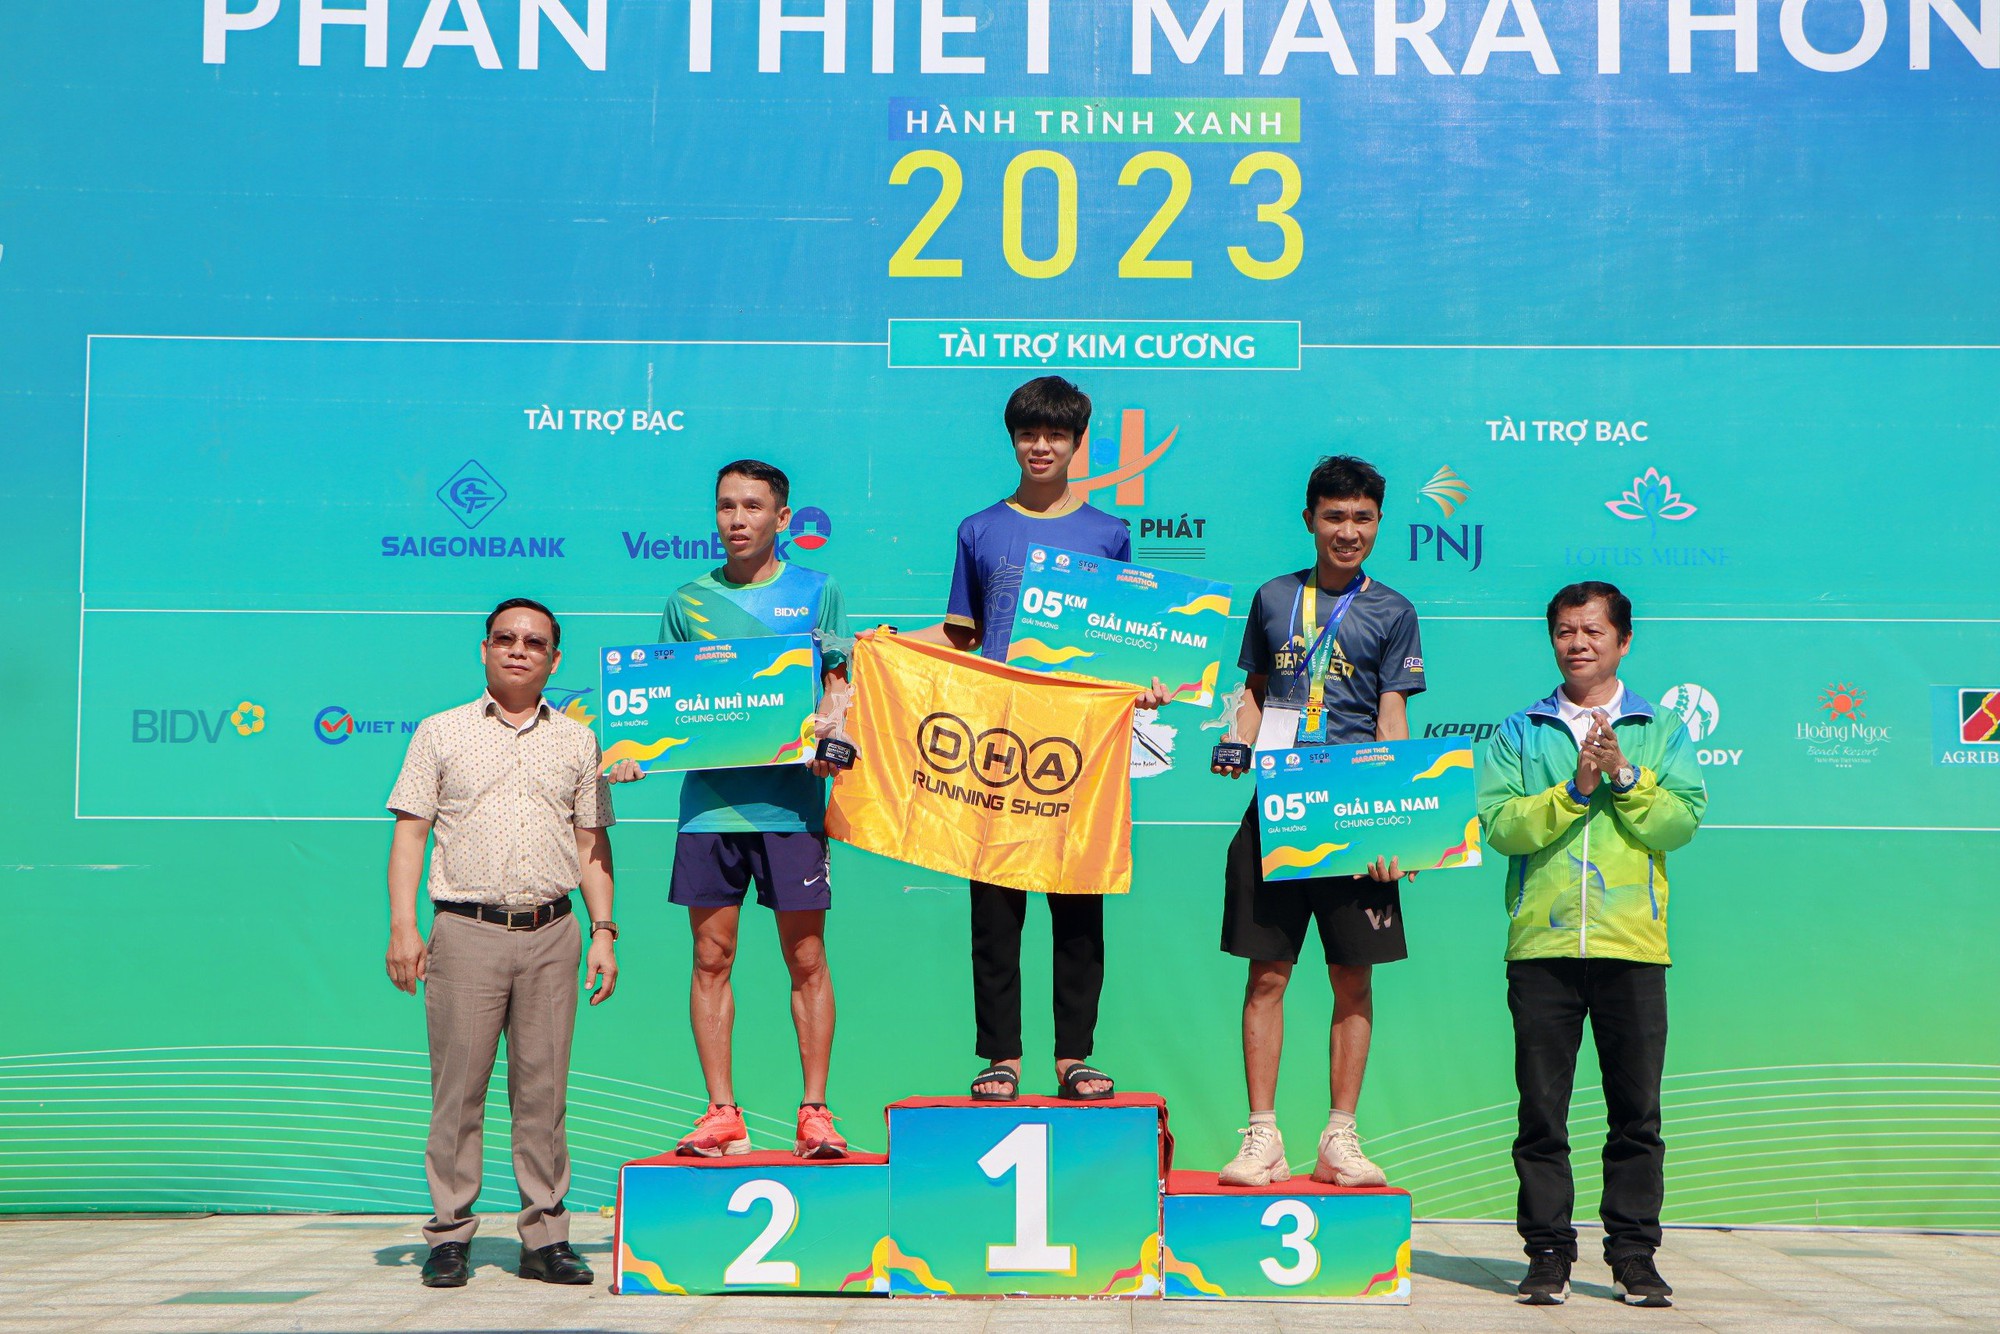 Cựu tuyển thủ Phạm Thị Bình chinh phục Phan Thiết Marathon 2023 - Ảnh 15.